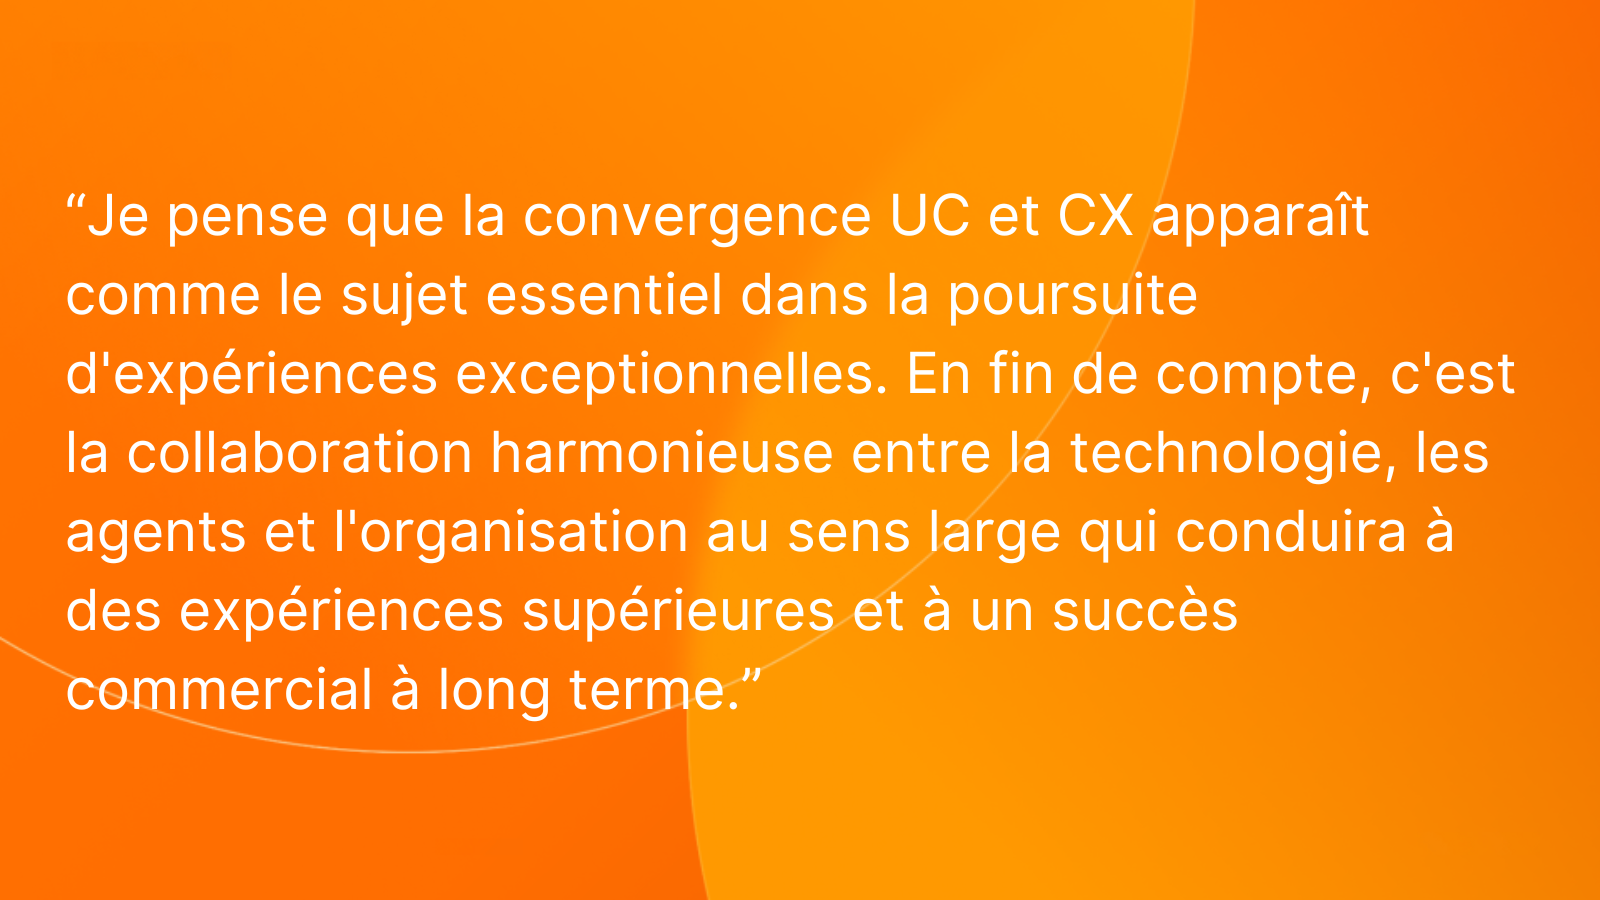 Convergence UC et CX